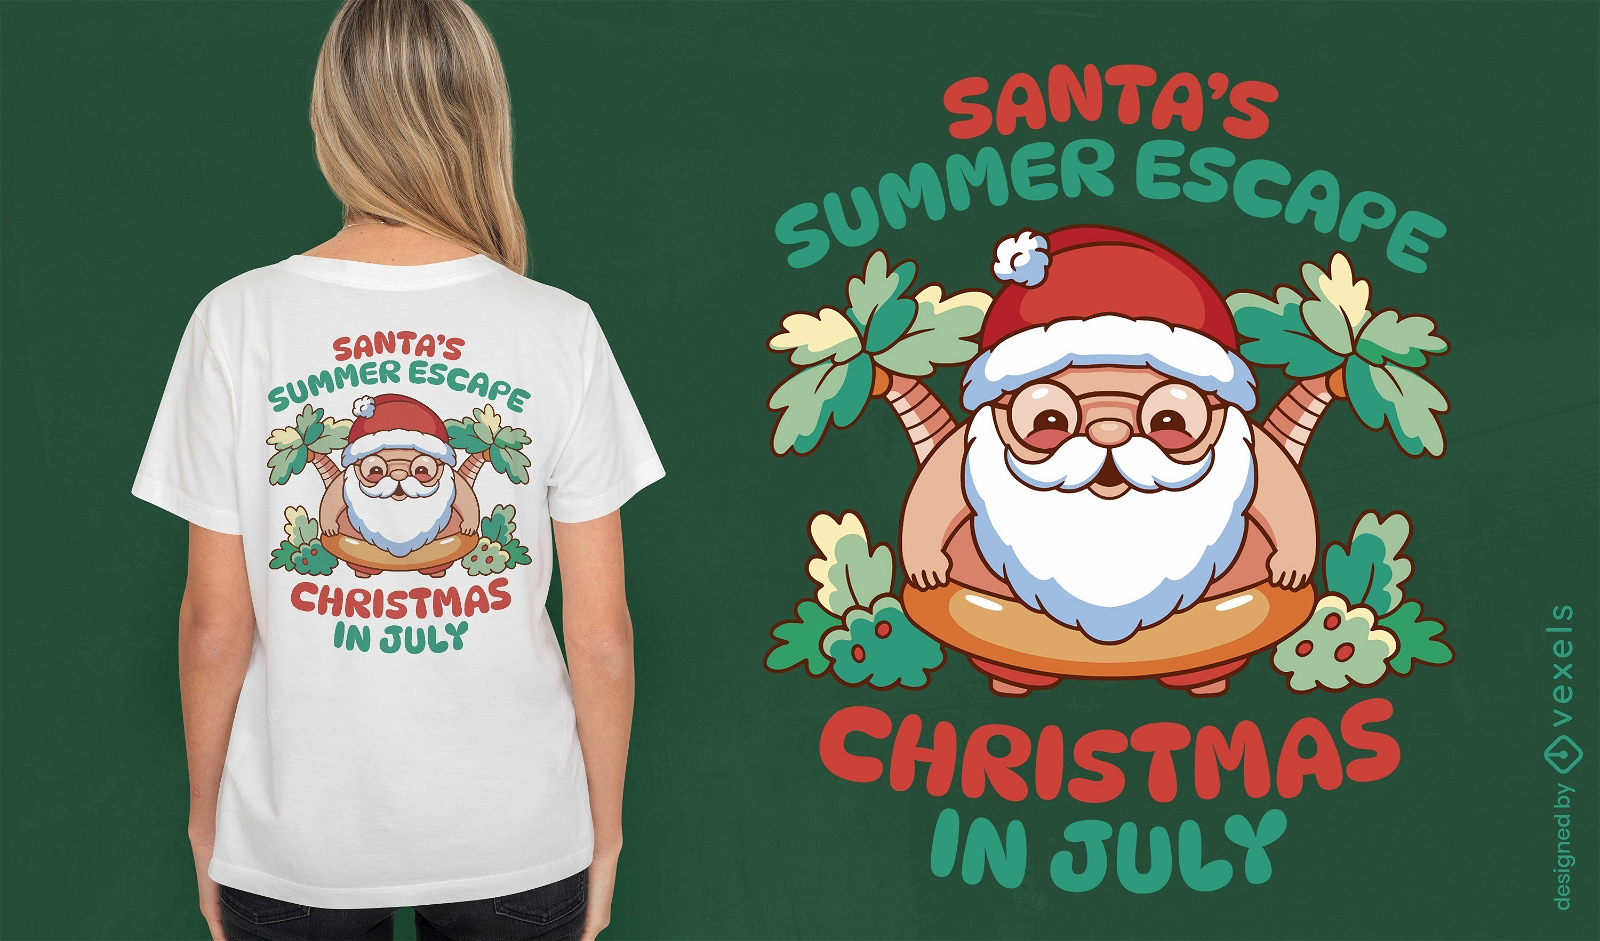 Dise?o de camiseta de escape navide?o de verano.